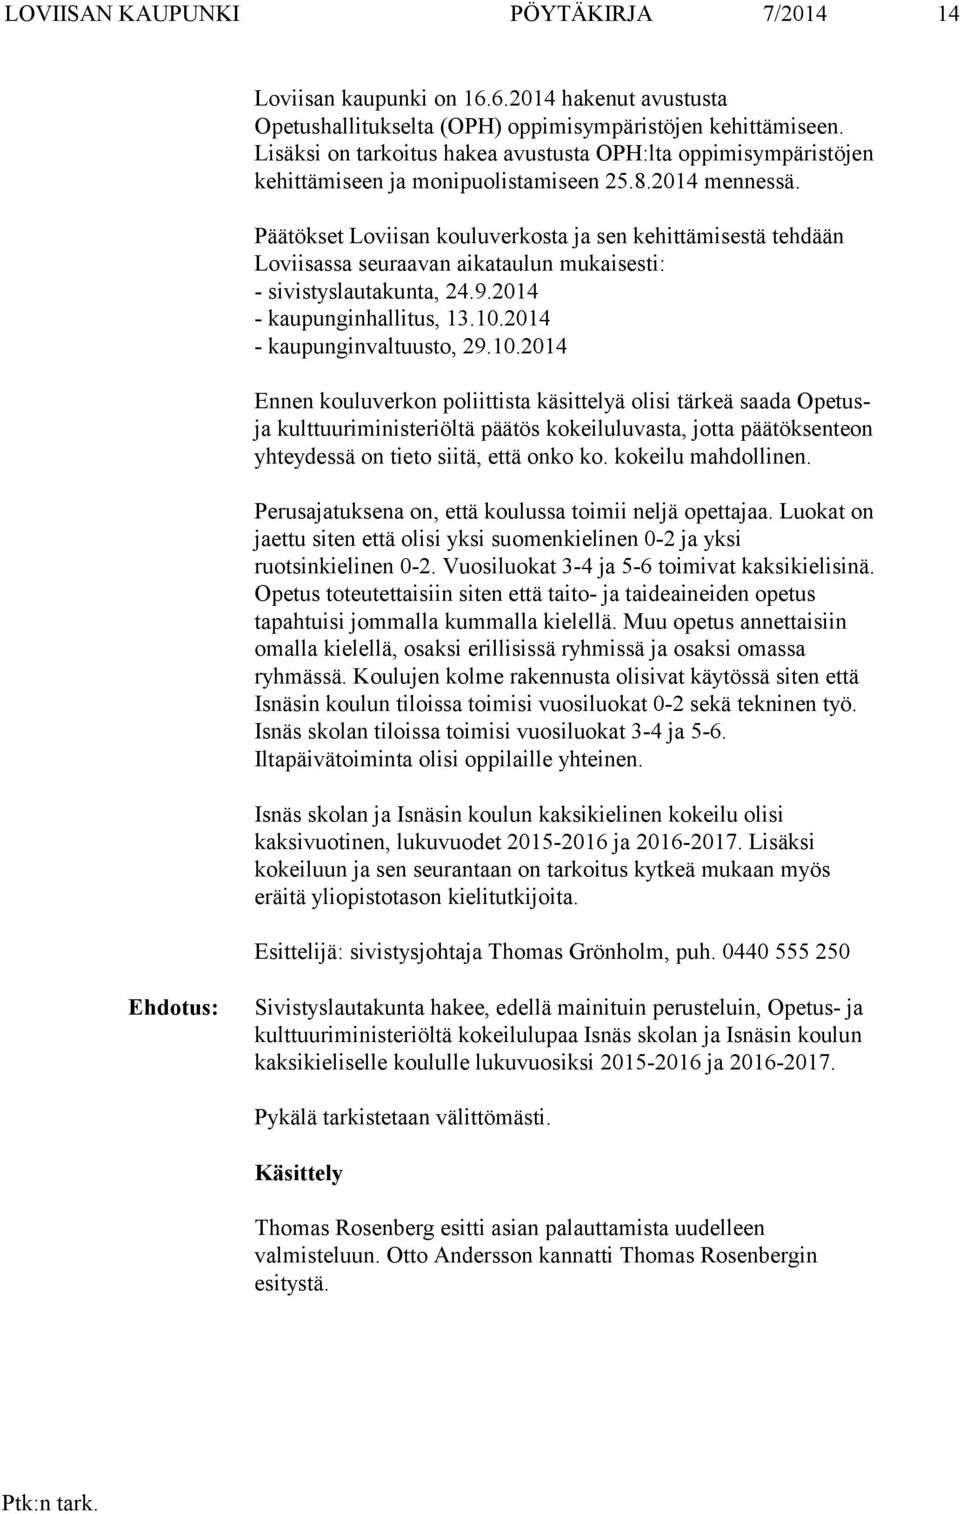 Päätökset Loviisan kouluverkosta ja sen kehittämisestä tehdään Loviisassa seuraavan aikataulun mukaisesti: - sivistyslautakunta, 24.9.2014 - kaupunginhallitus, 13.10.